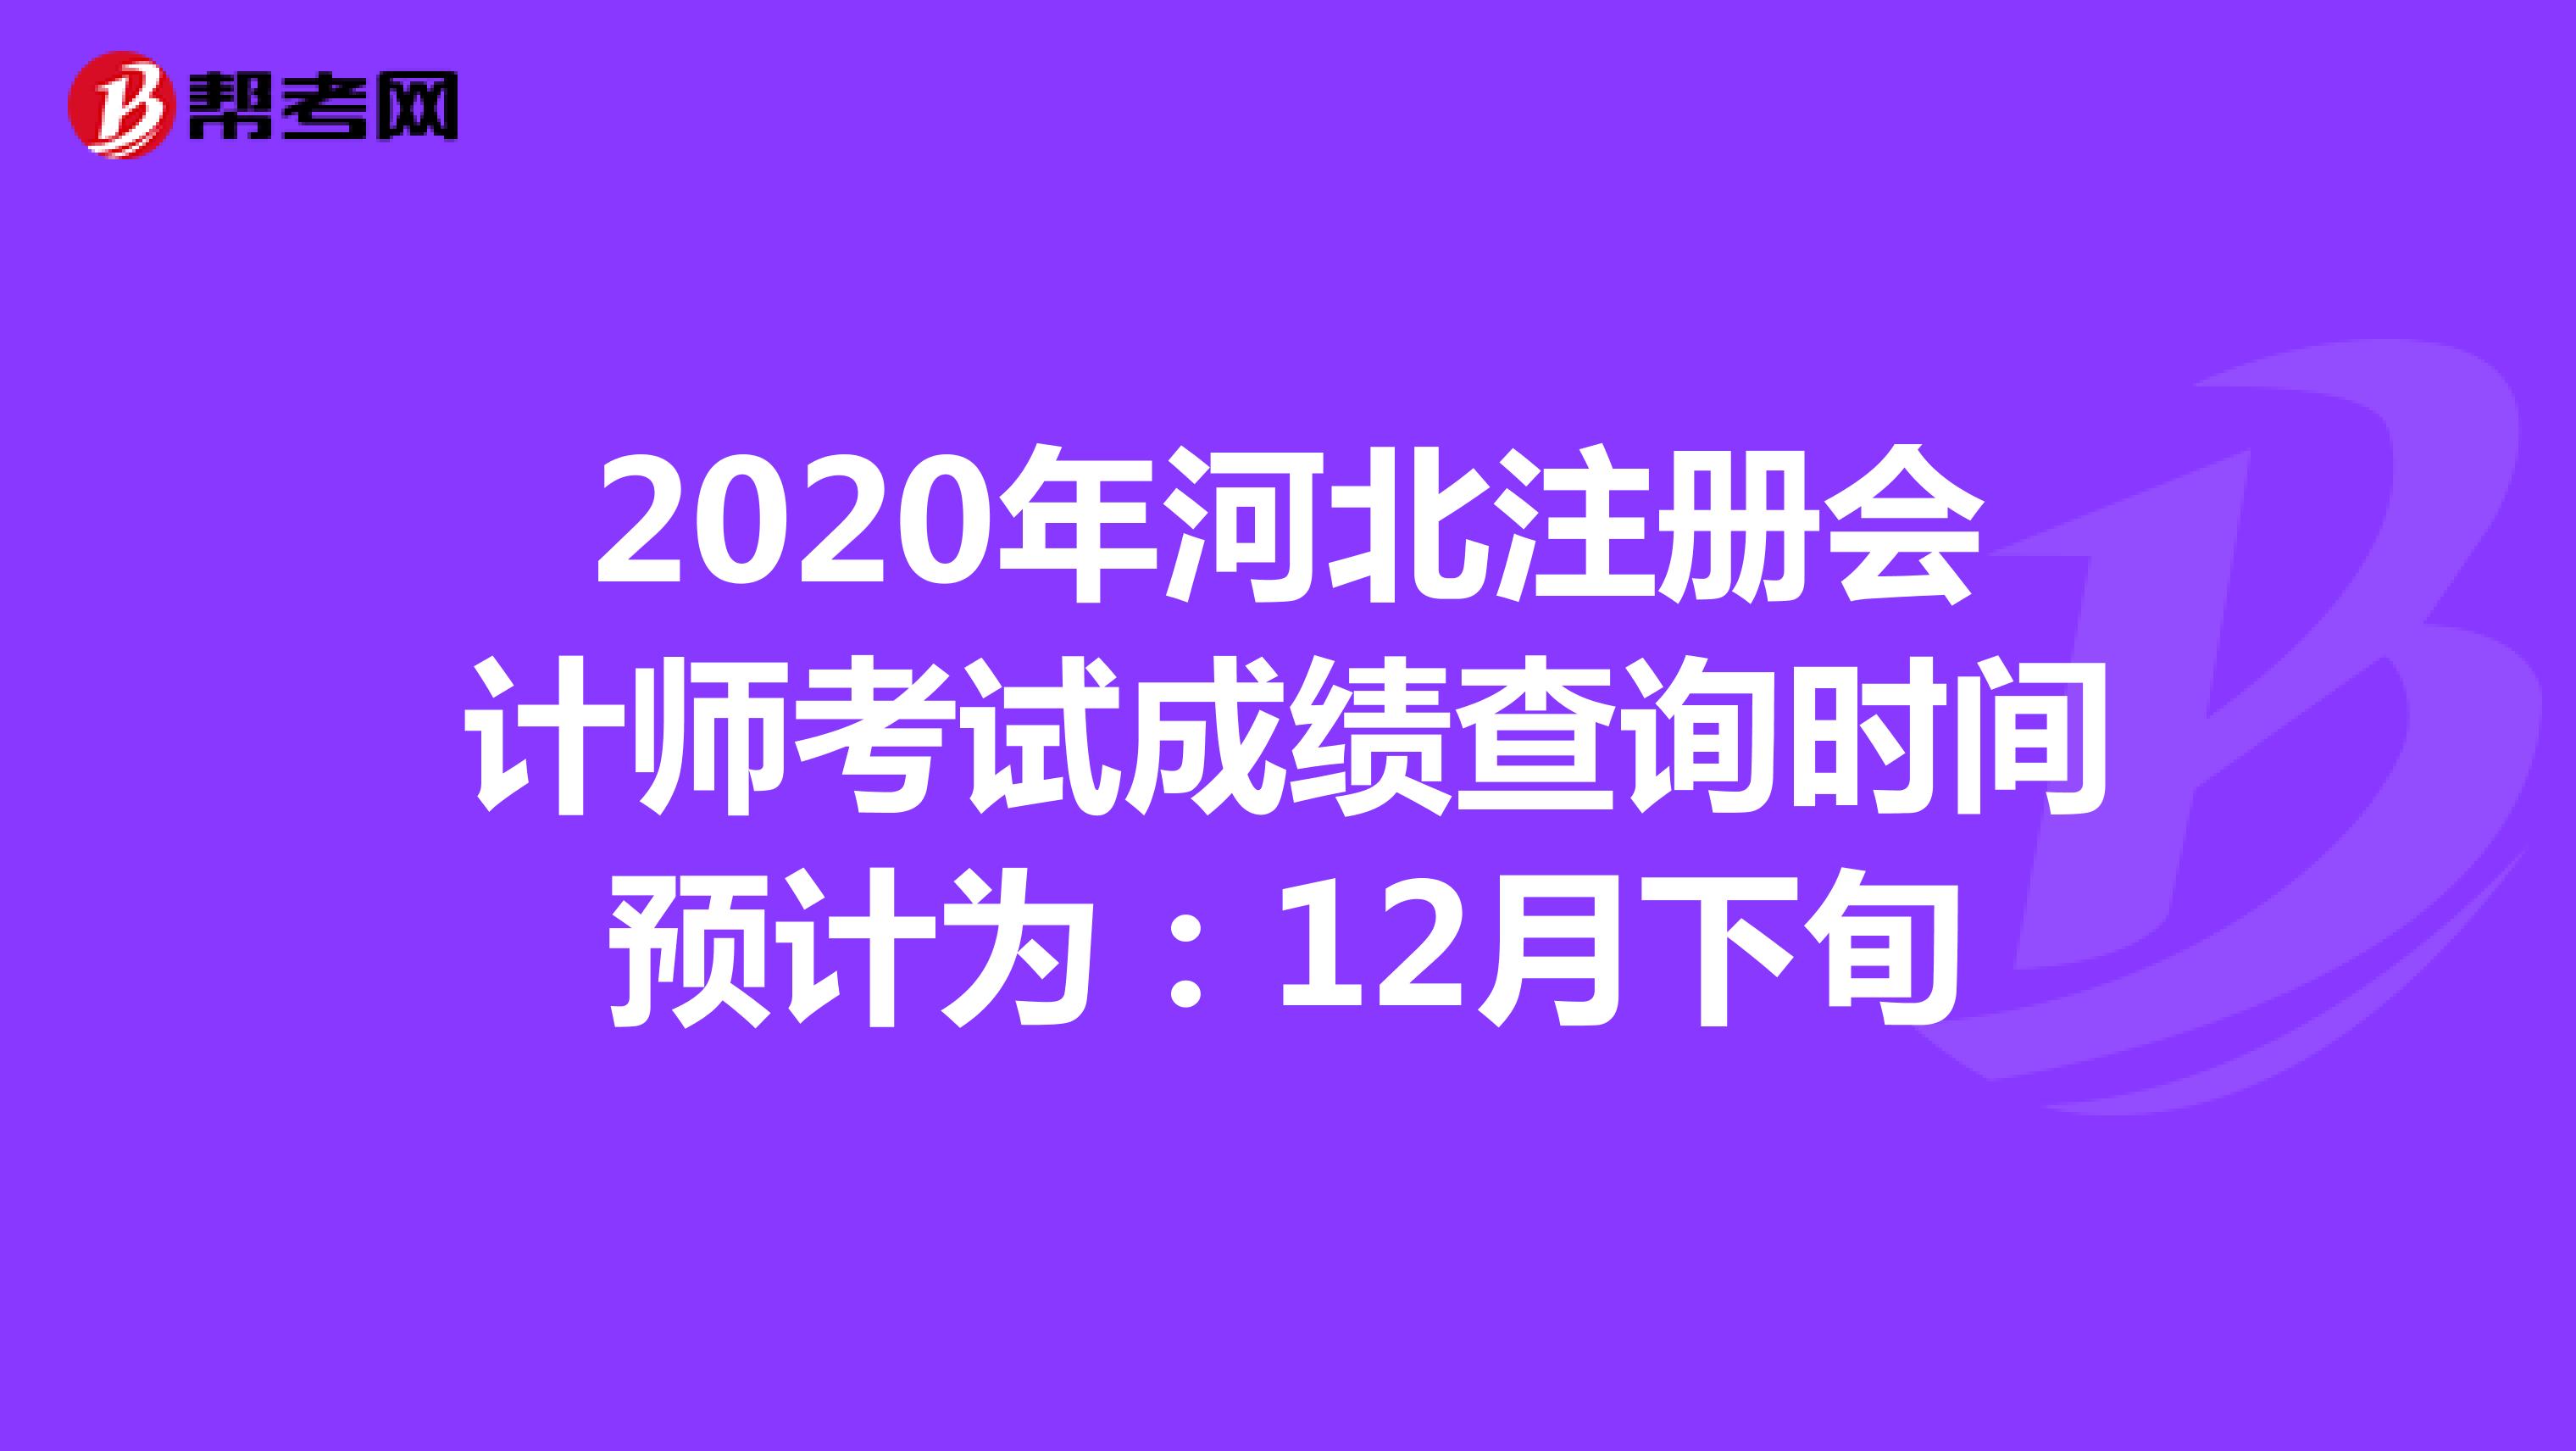 2020年河北注册会计师考试成绩查询时间预计为：12月下旬